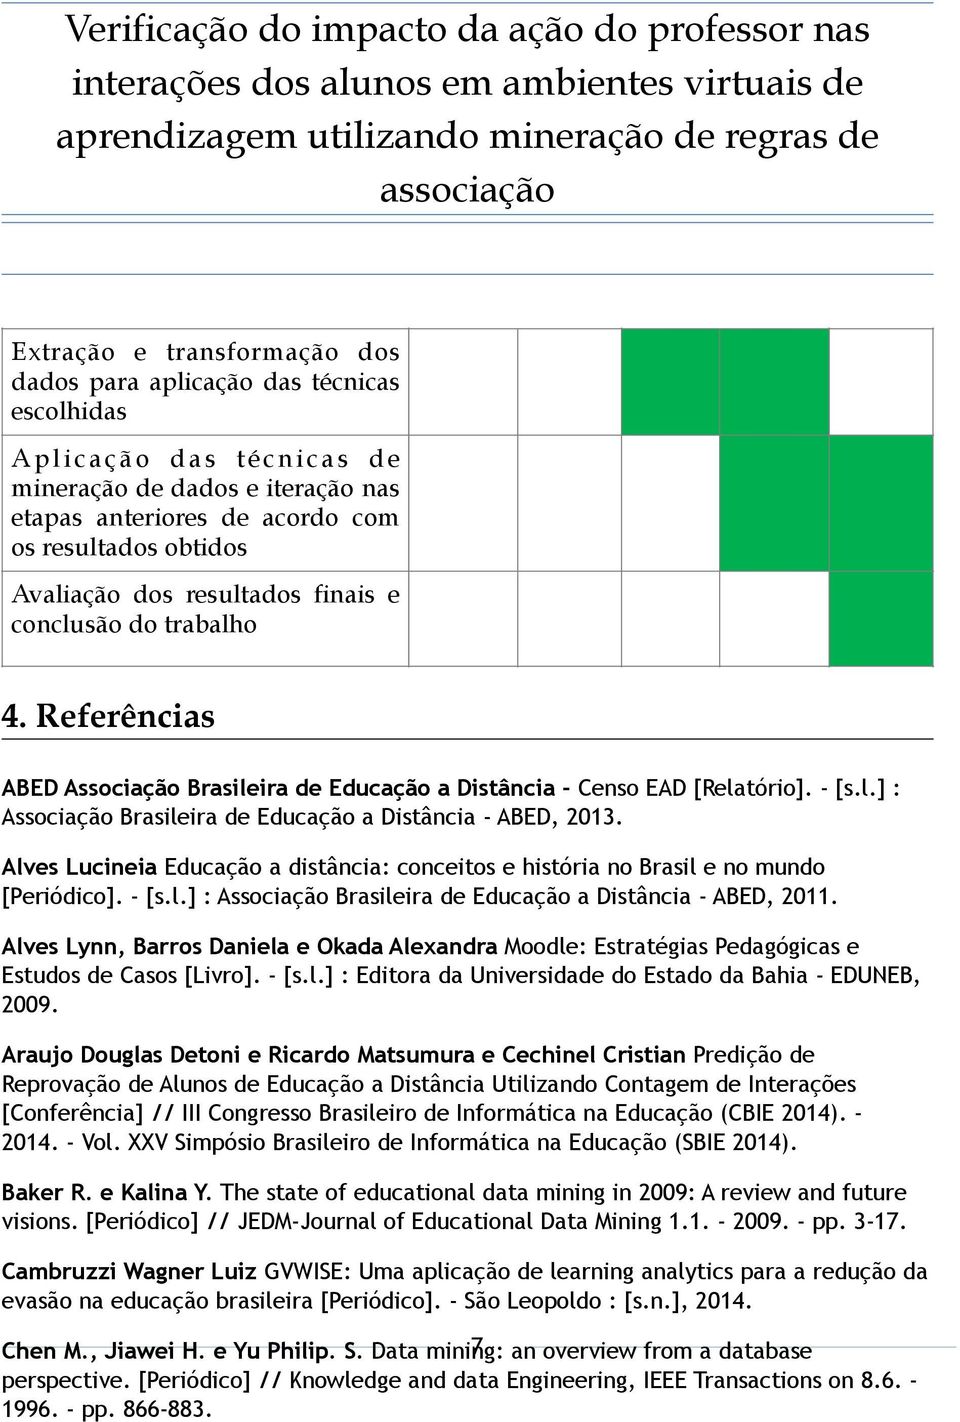 Alves Lucineia Educação a distância: conceitos e história no Brasil e no mundo [Periódico]. - [s.l.] : Associação Brasileira de Educação a Distância - ABED, 2011.